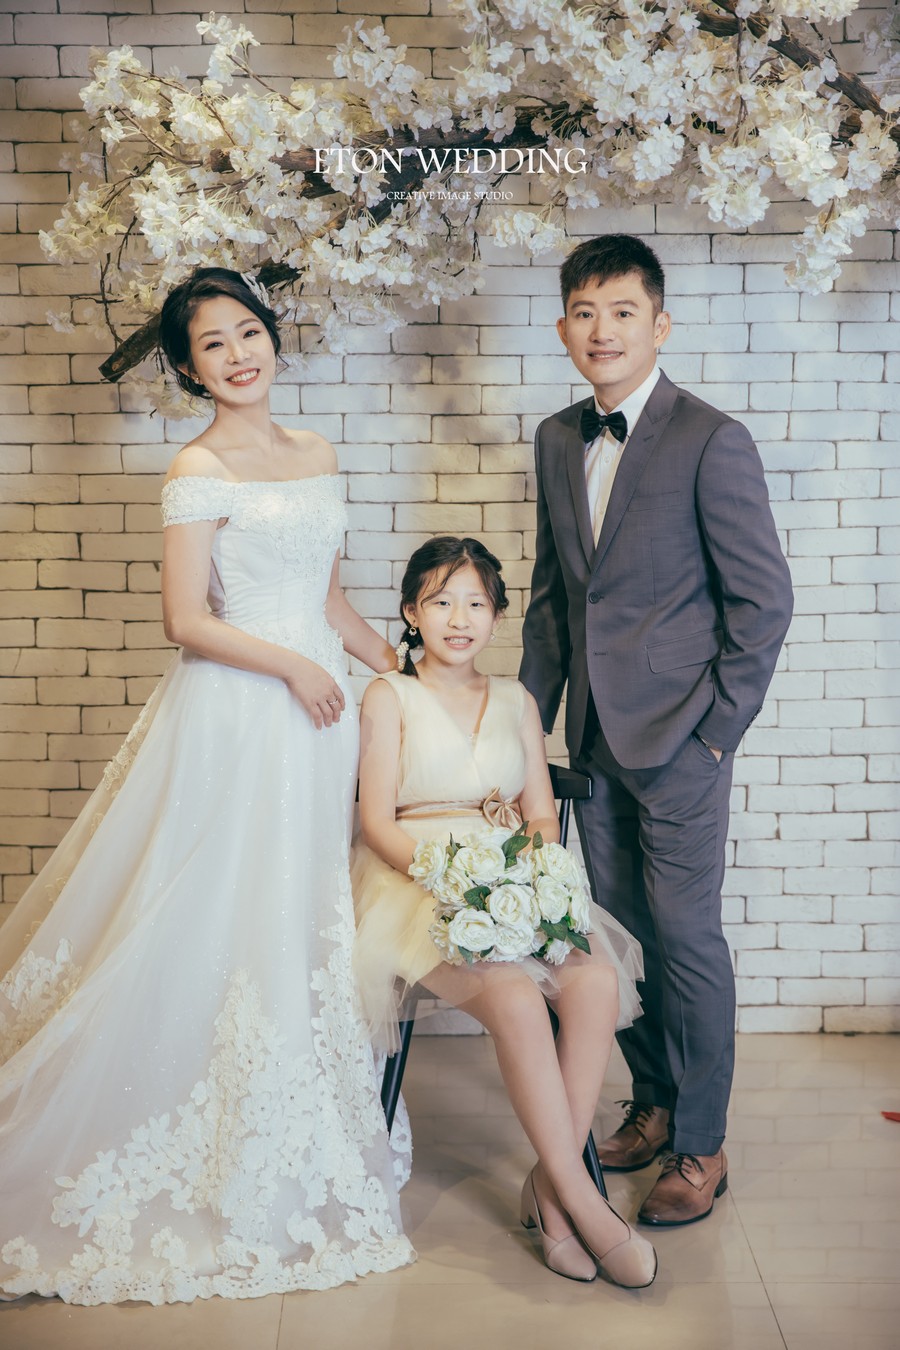 台南 自助婚紗費用,台南 婚紗攝影 價格,台南 自助婚紗推薦,台南 拍婚紗,台南 自助婚紗2021